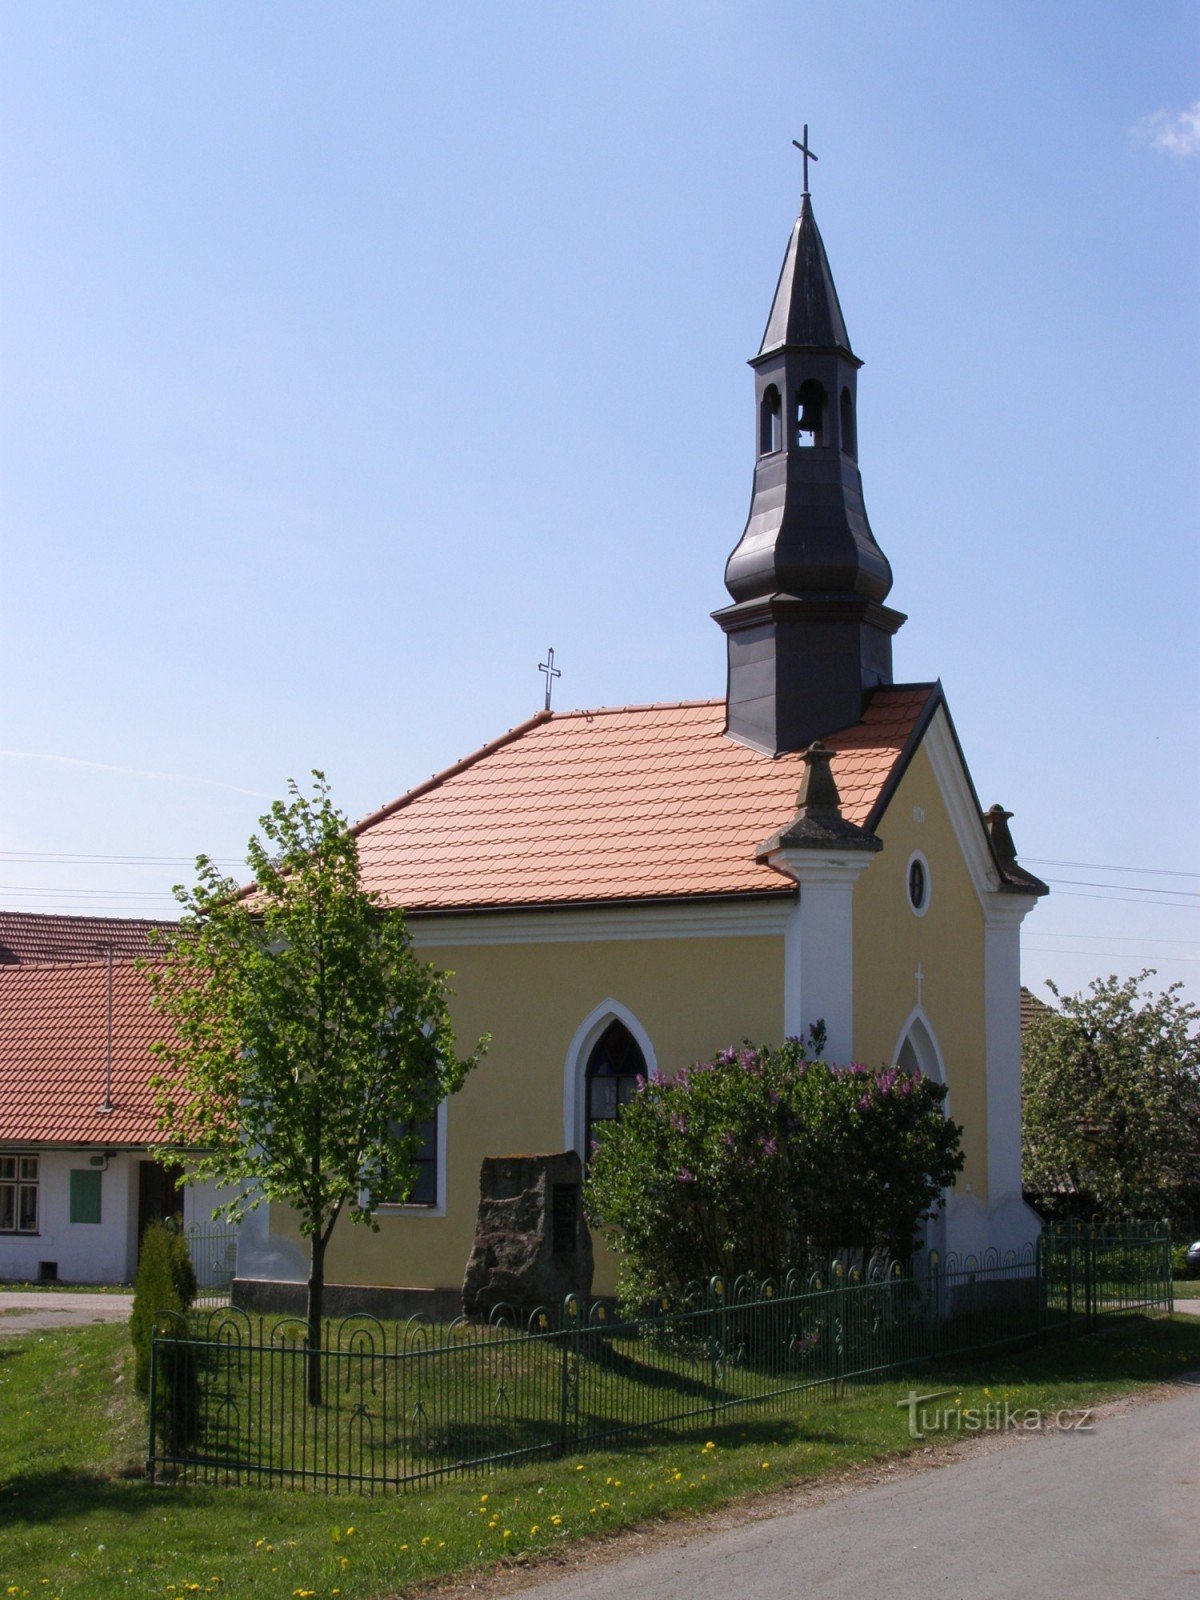 Soldat - chapelle